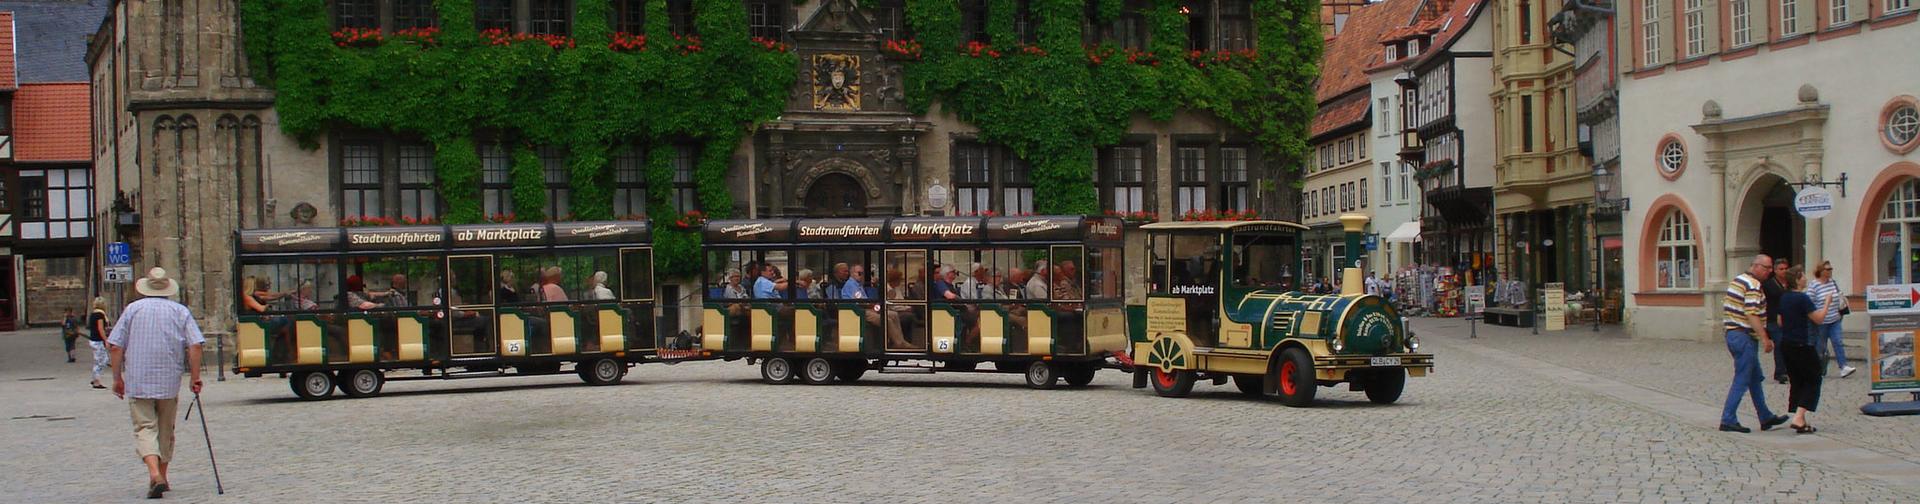 Bimmelbahn auf dem Marktplatz in Quedlinburg